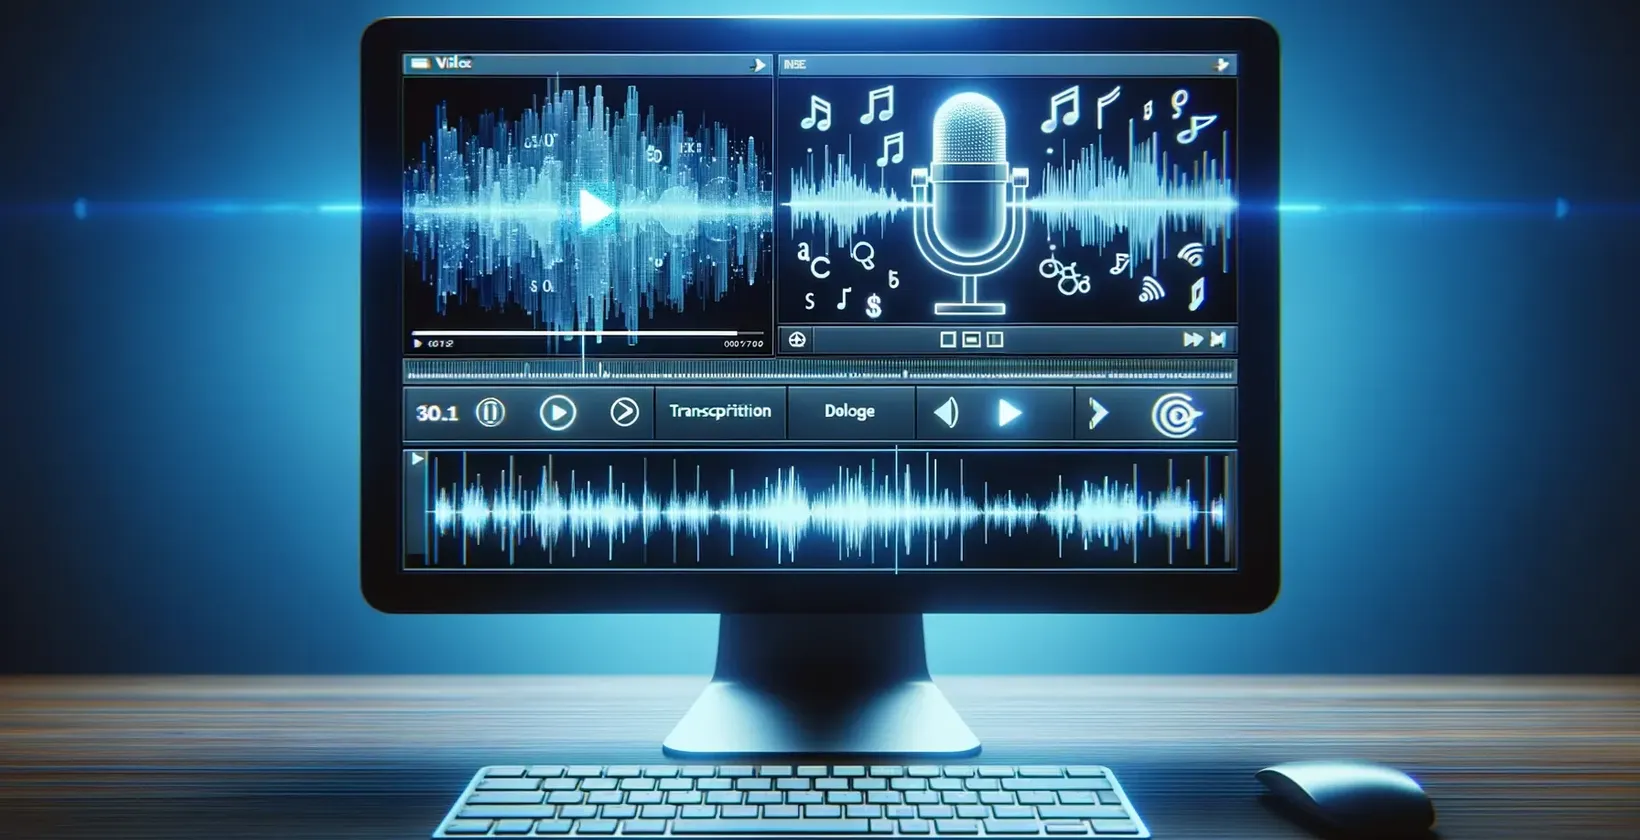 Екран комп'ютера, на якому відображаються музичні ноти, і мікрофон, який використовується для транскрипції відео в текст.